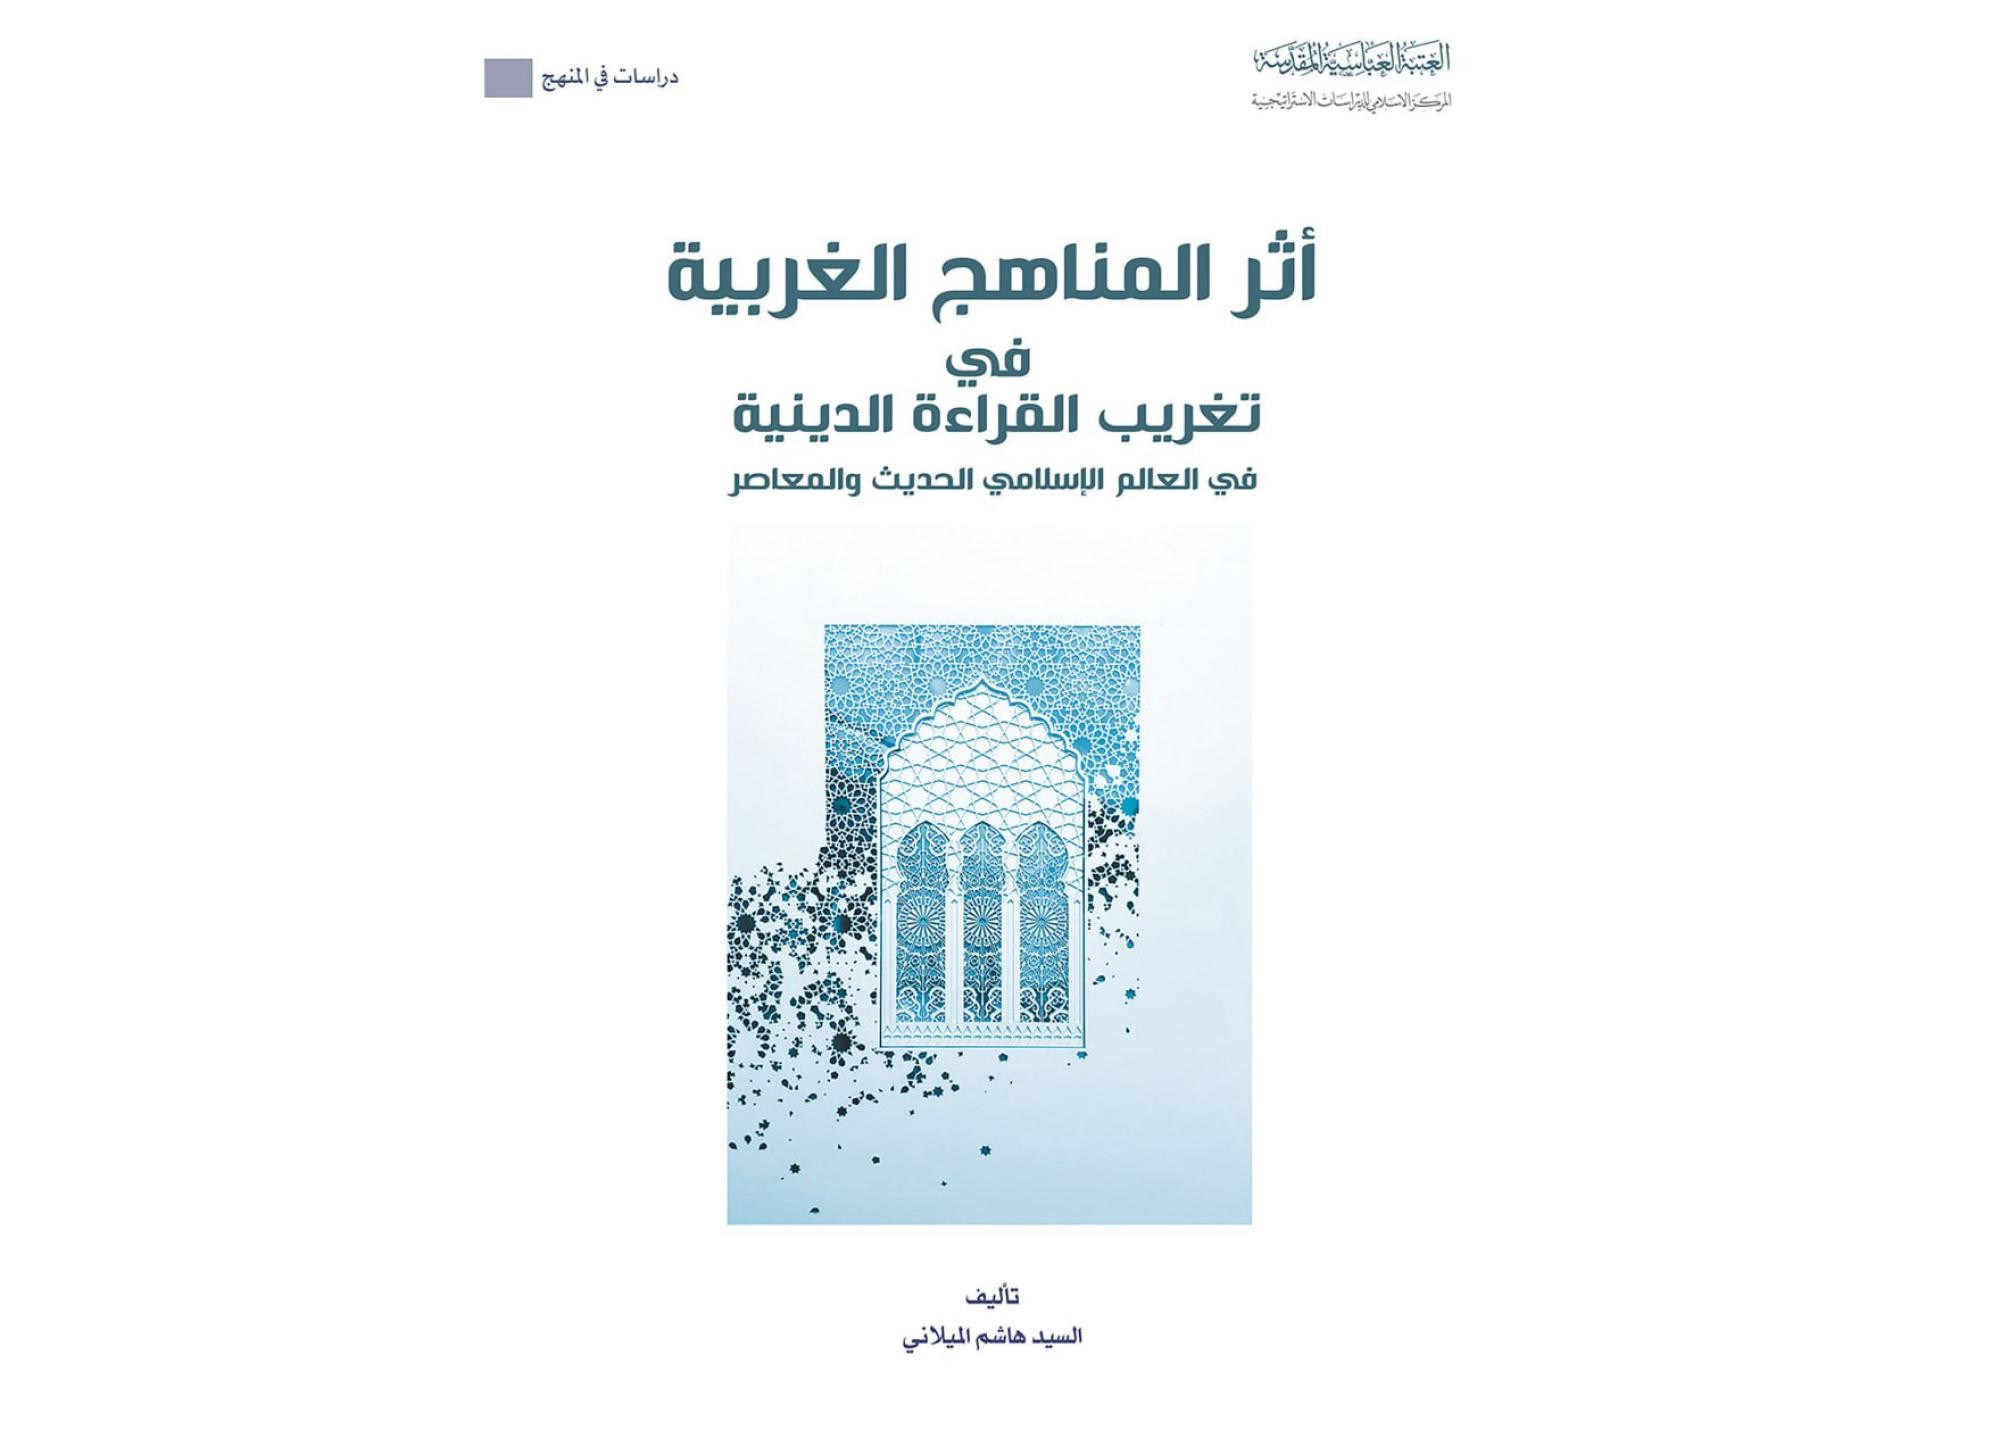 قسم الشؤون الفكريّة والثقافيّة يصدر كتاباً حول أثر المناهج الغربيّة في تغريب القراءة الدينيّة